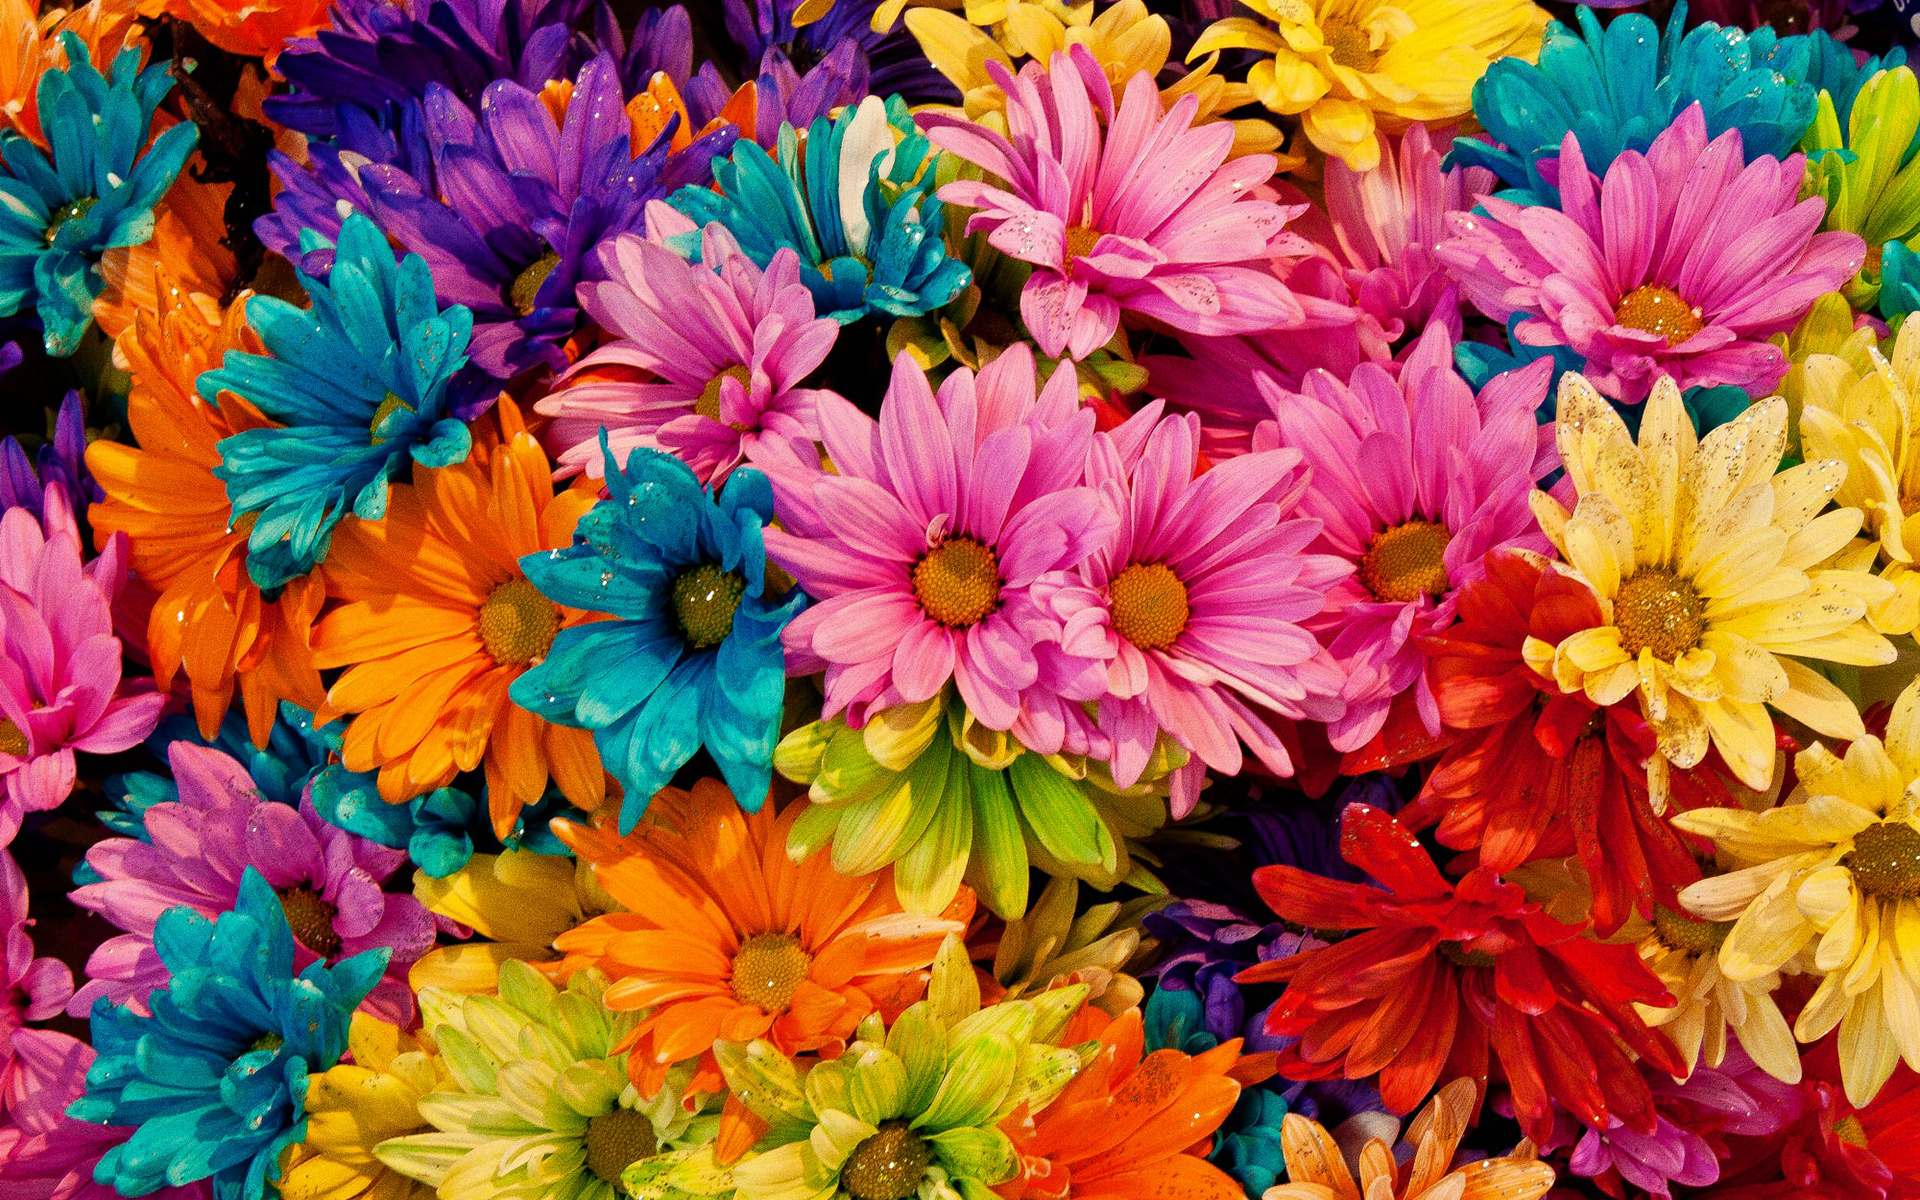 Май ярких цветов. Радужный цветок Дейзи. Разноцветные ромашки. Яркие разноцветные цветы. Красивые яркие фотографии.